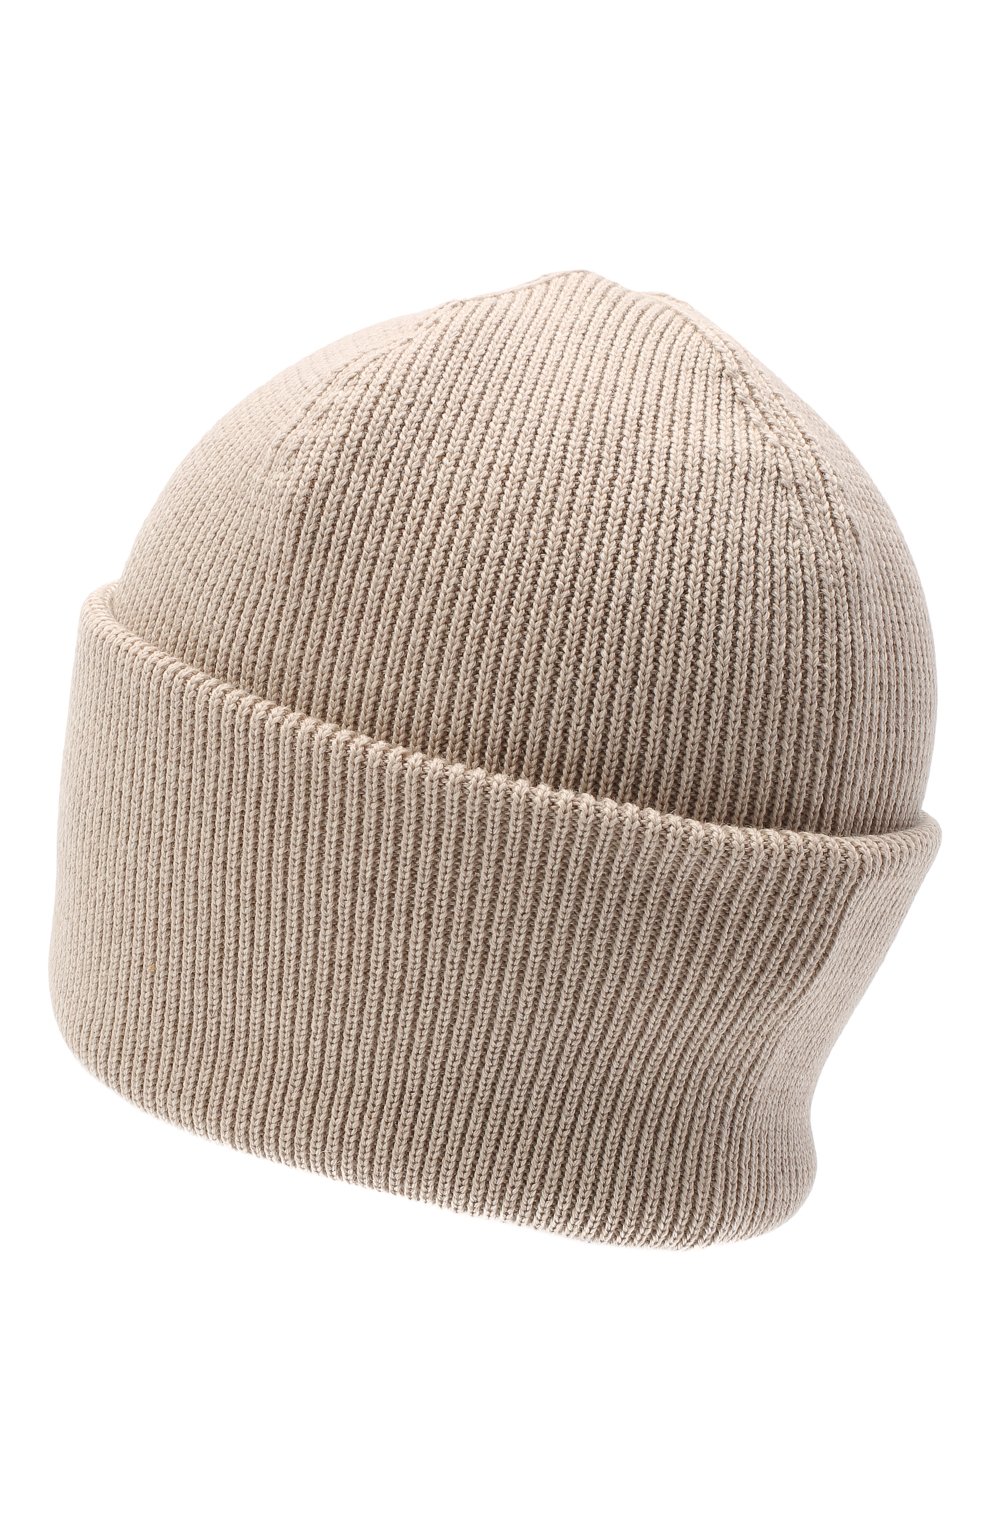 Мужская шерстяная шапка CANADA GOOSE бежевого цвета, арт. 6936M | Фото 2 (Материал: Текстиль, Шерсть; Кросс-КТ: Трикотаж)